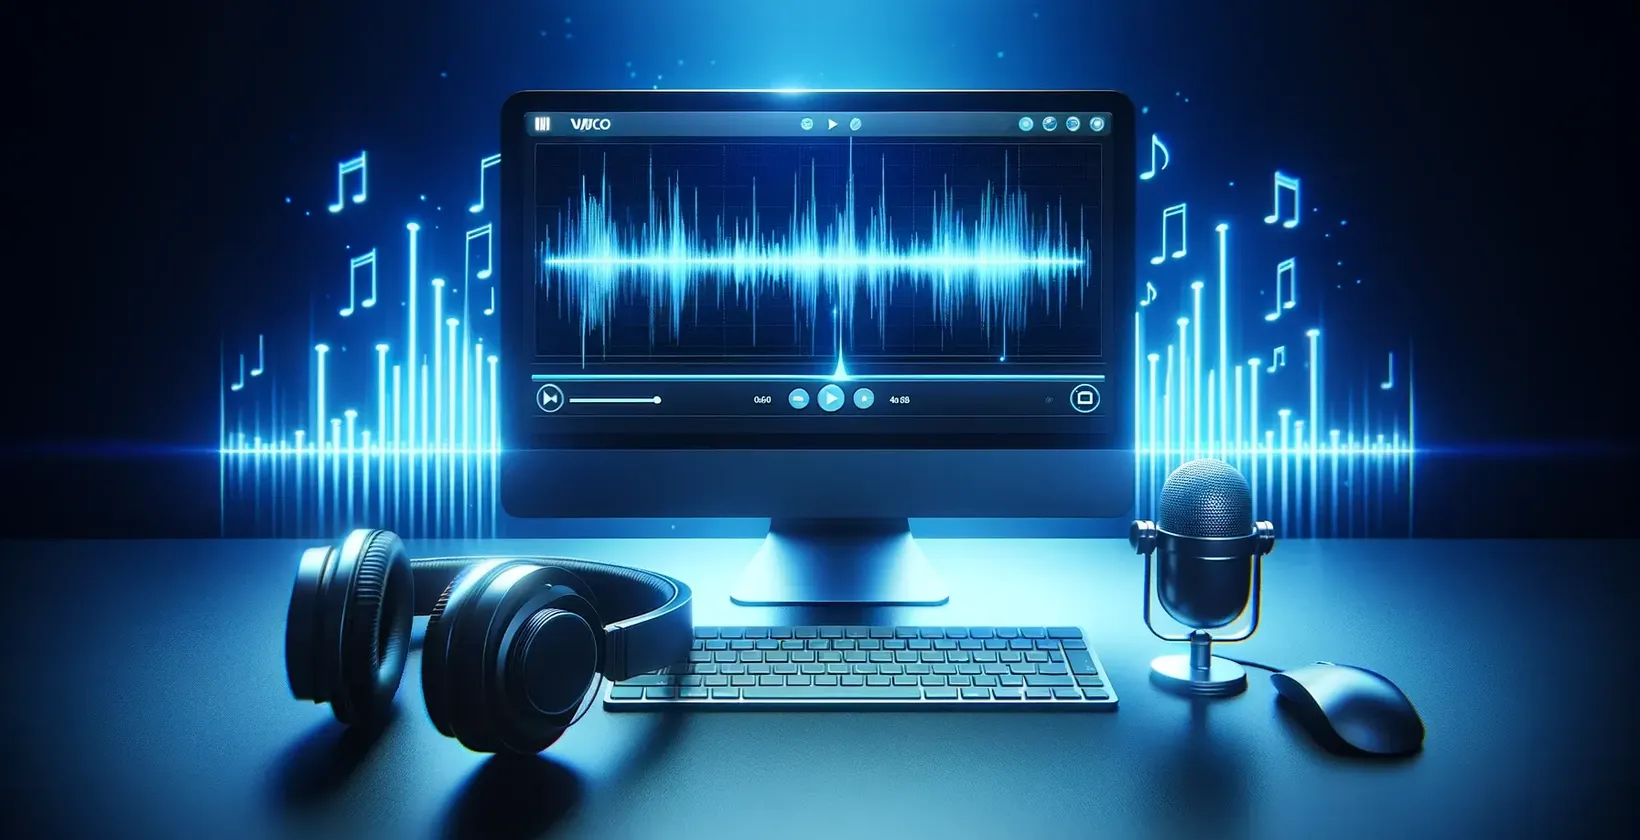 Софтвер за автоматска транскрипција прикажан во дигитален работен простор со компјутер, слушалки и микрофон на таблет.